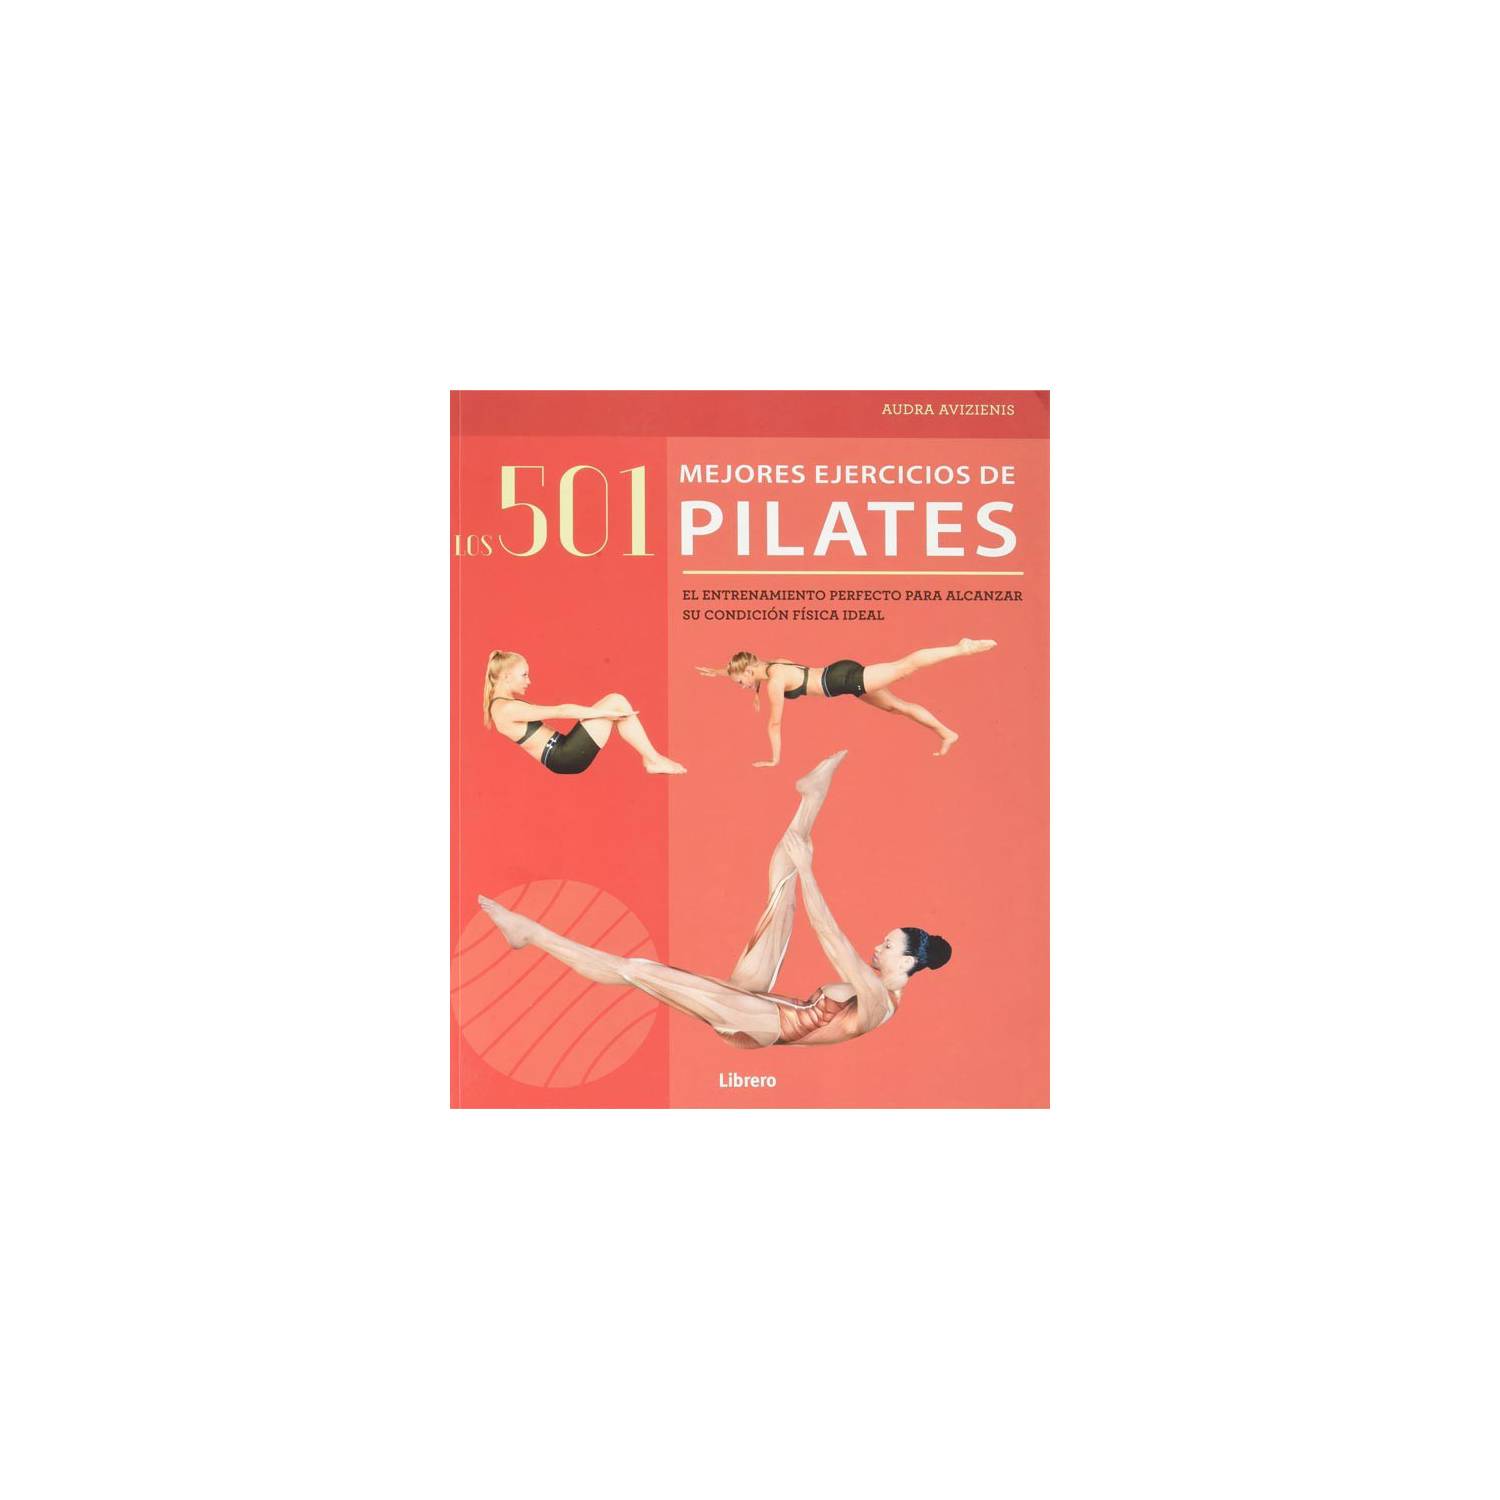 501 mejores ejercicios de pilates: el entrenamiento perfecto para